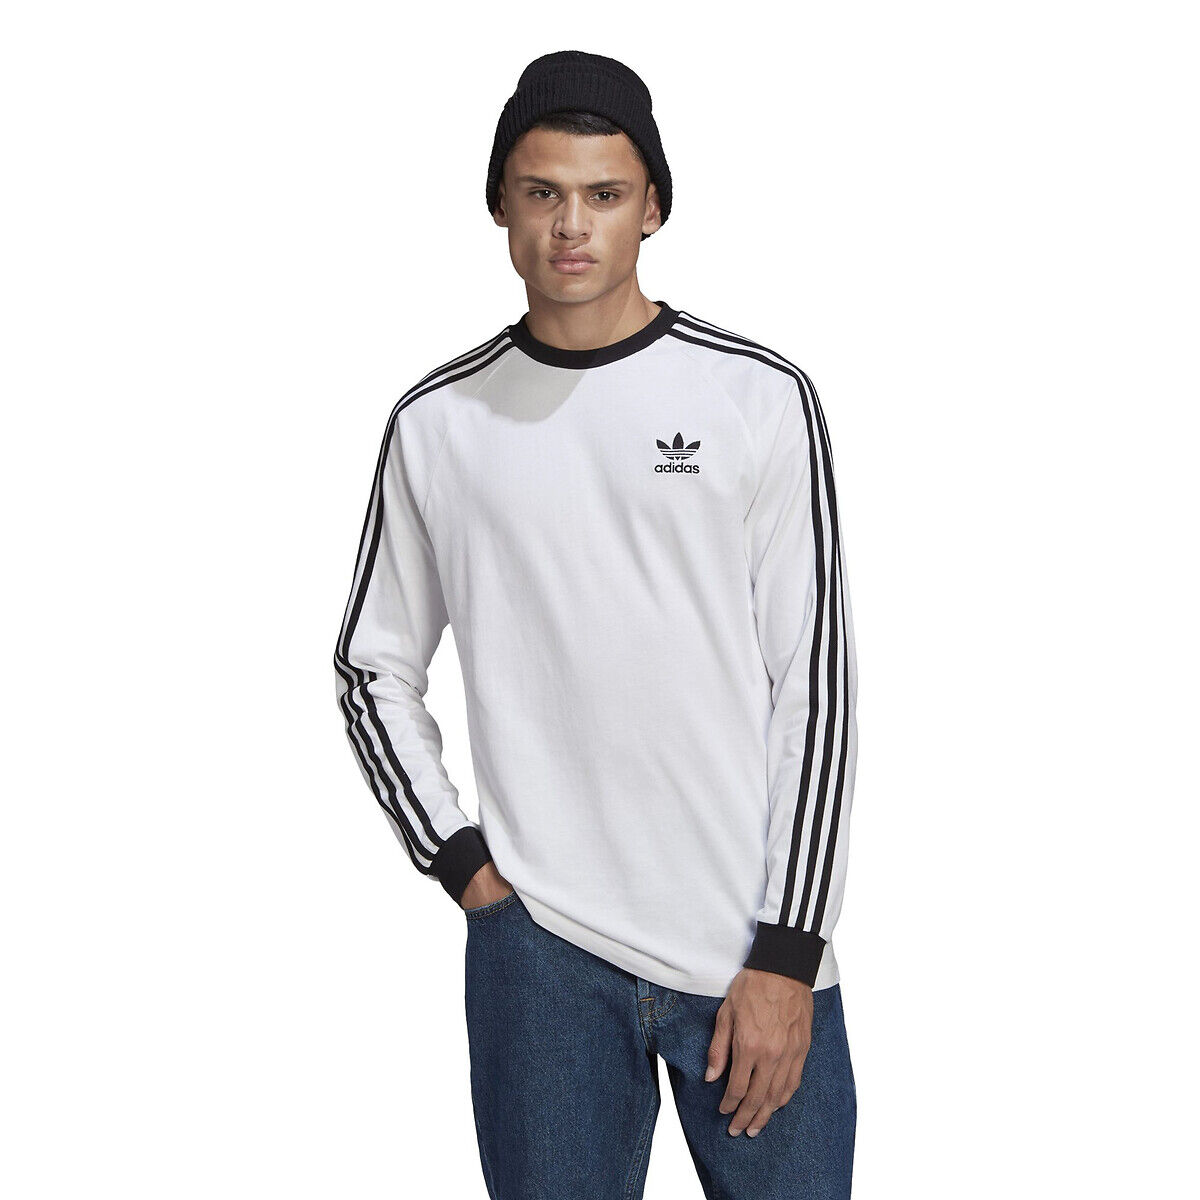 Adidas Shirt mit rundem Ausschnitt, 3 Logo-Stripes entlang der Ärmel WEISS